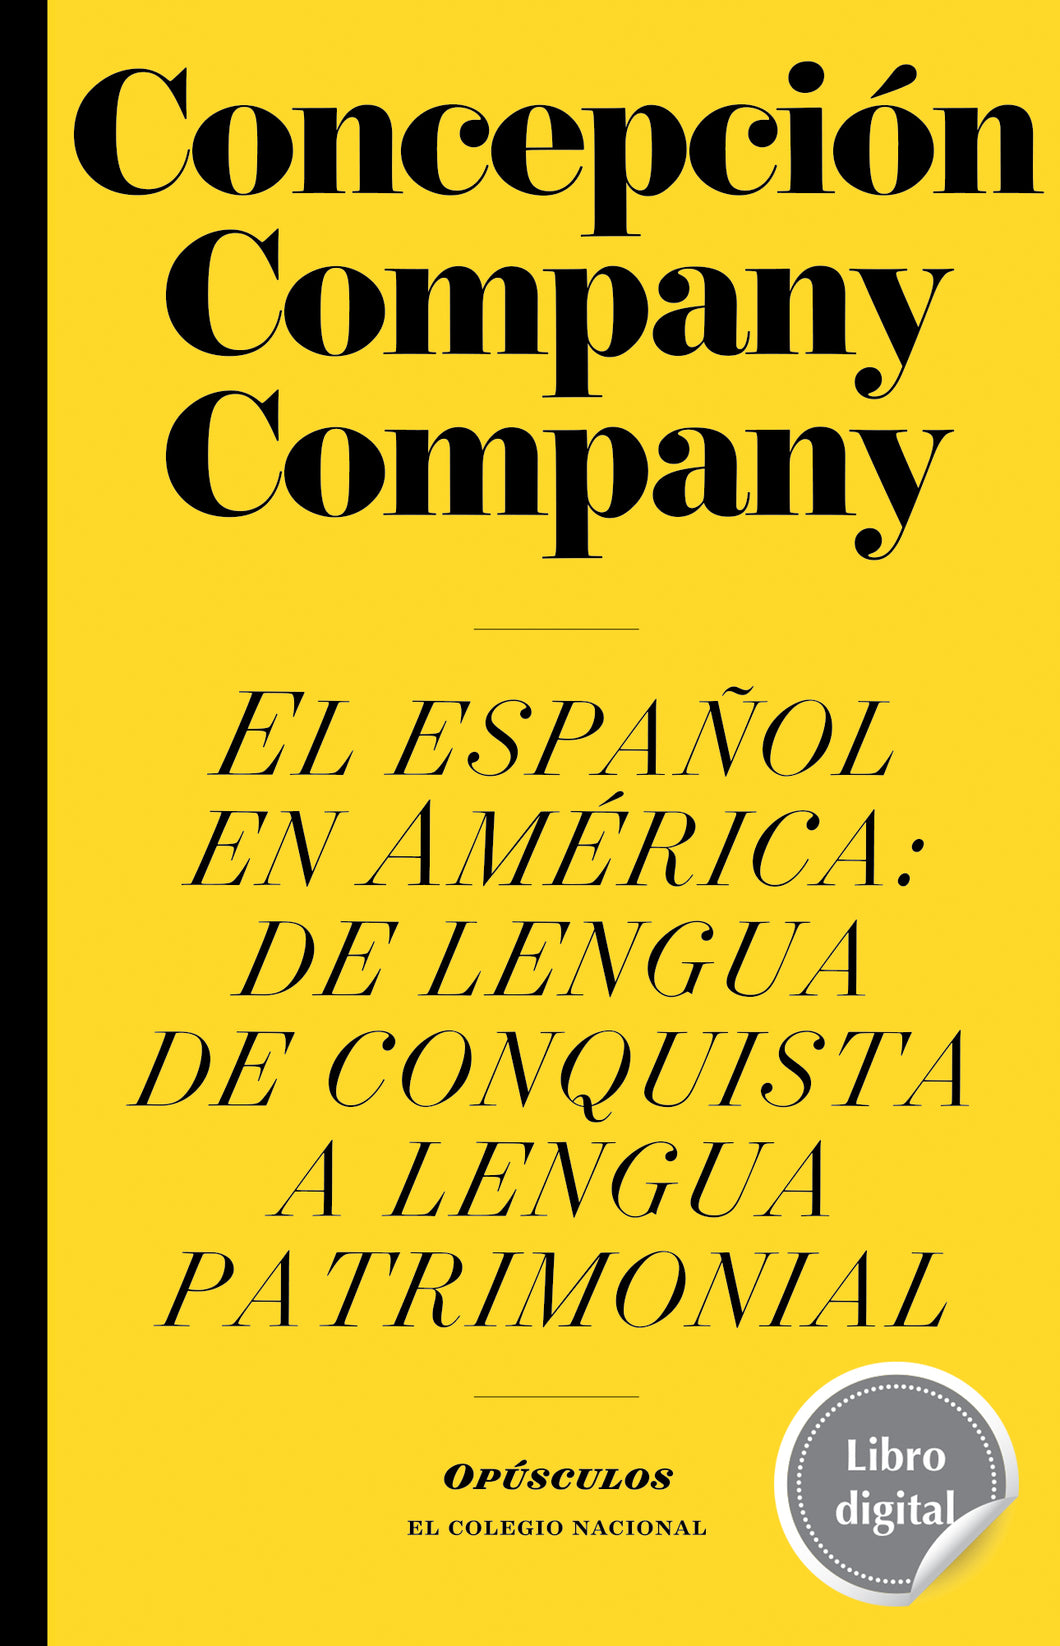 El español en América: de lengua de conquista a lengua patrimonial